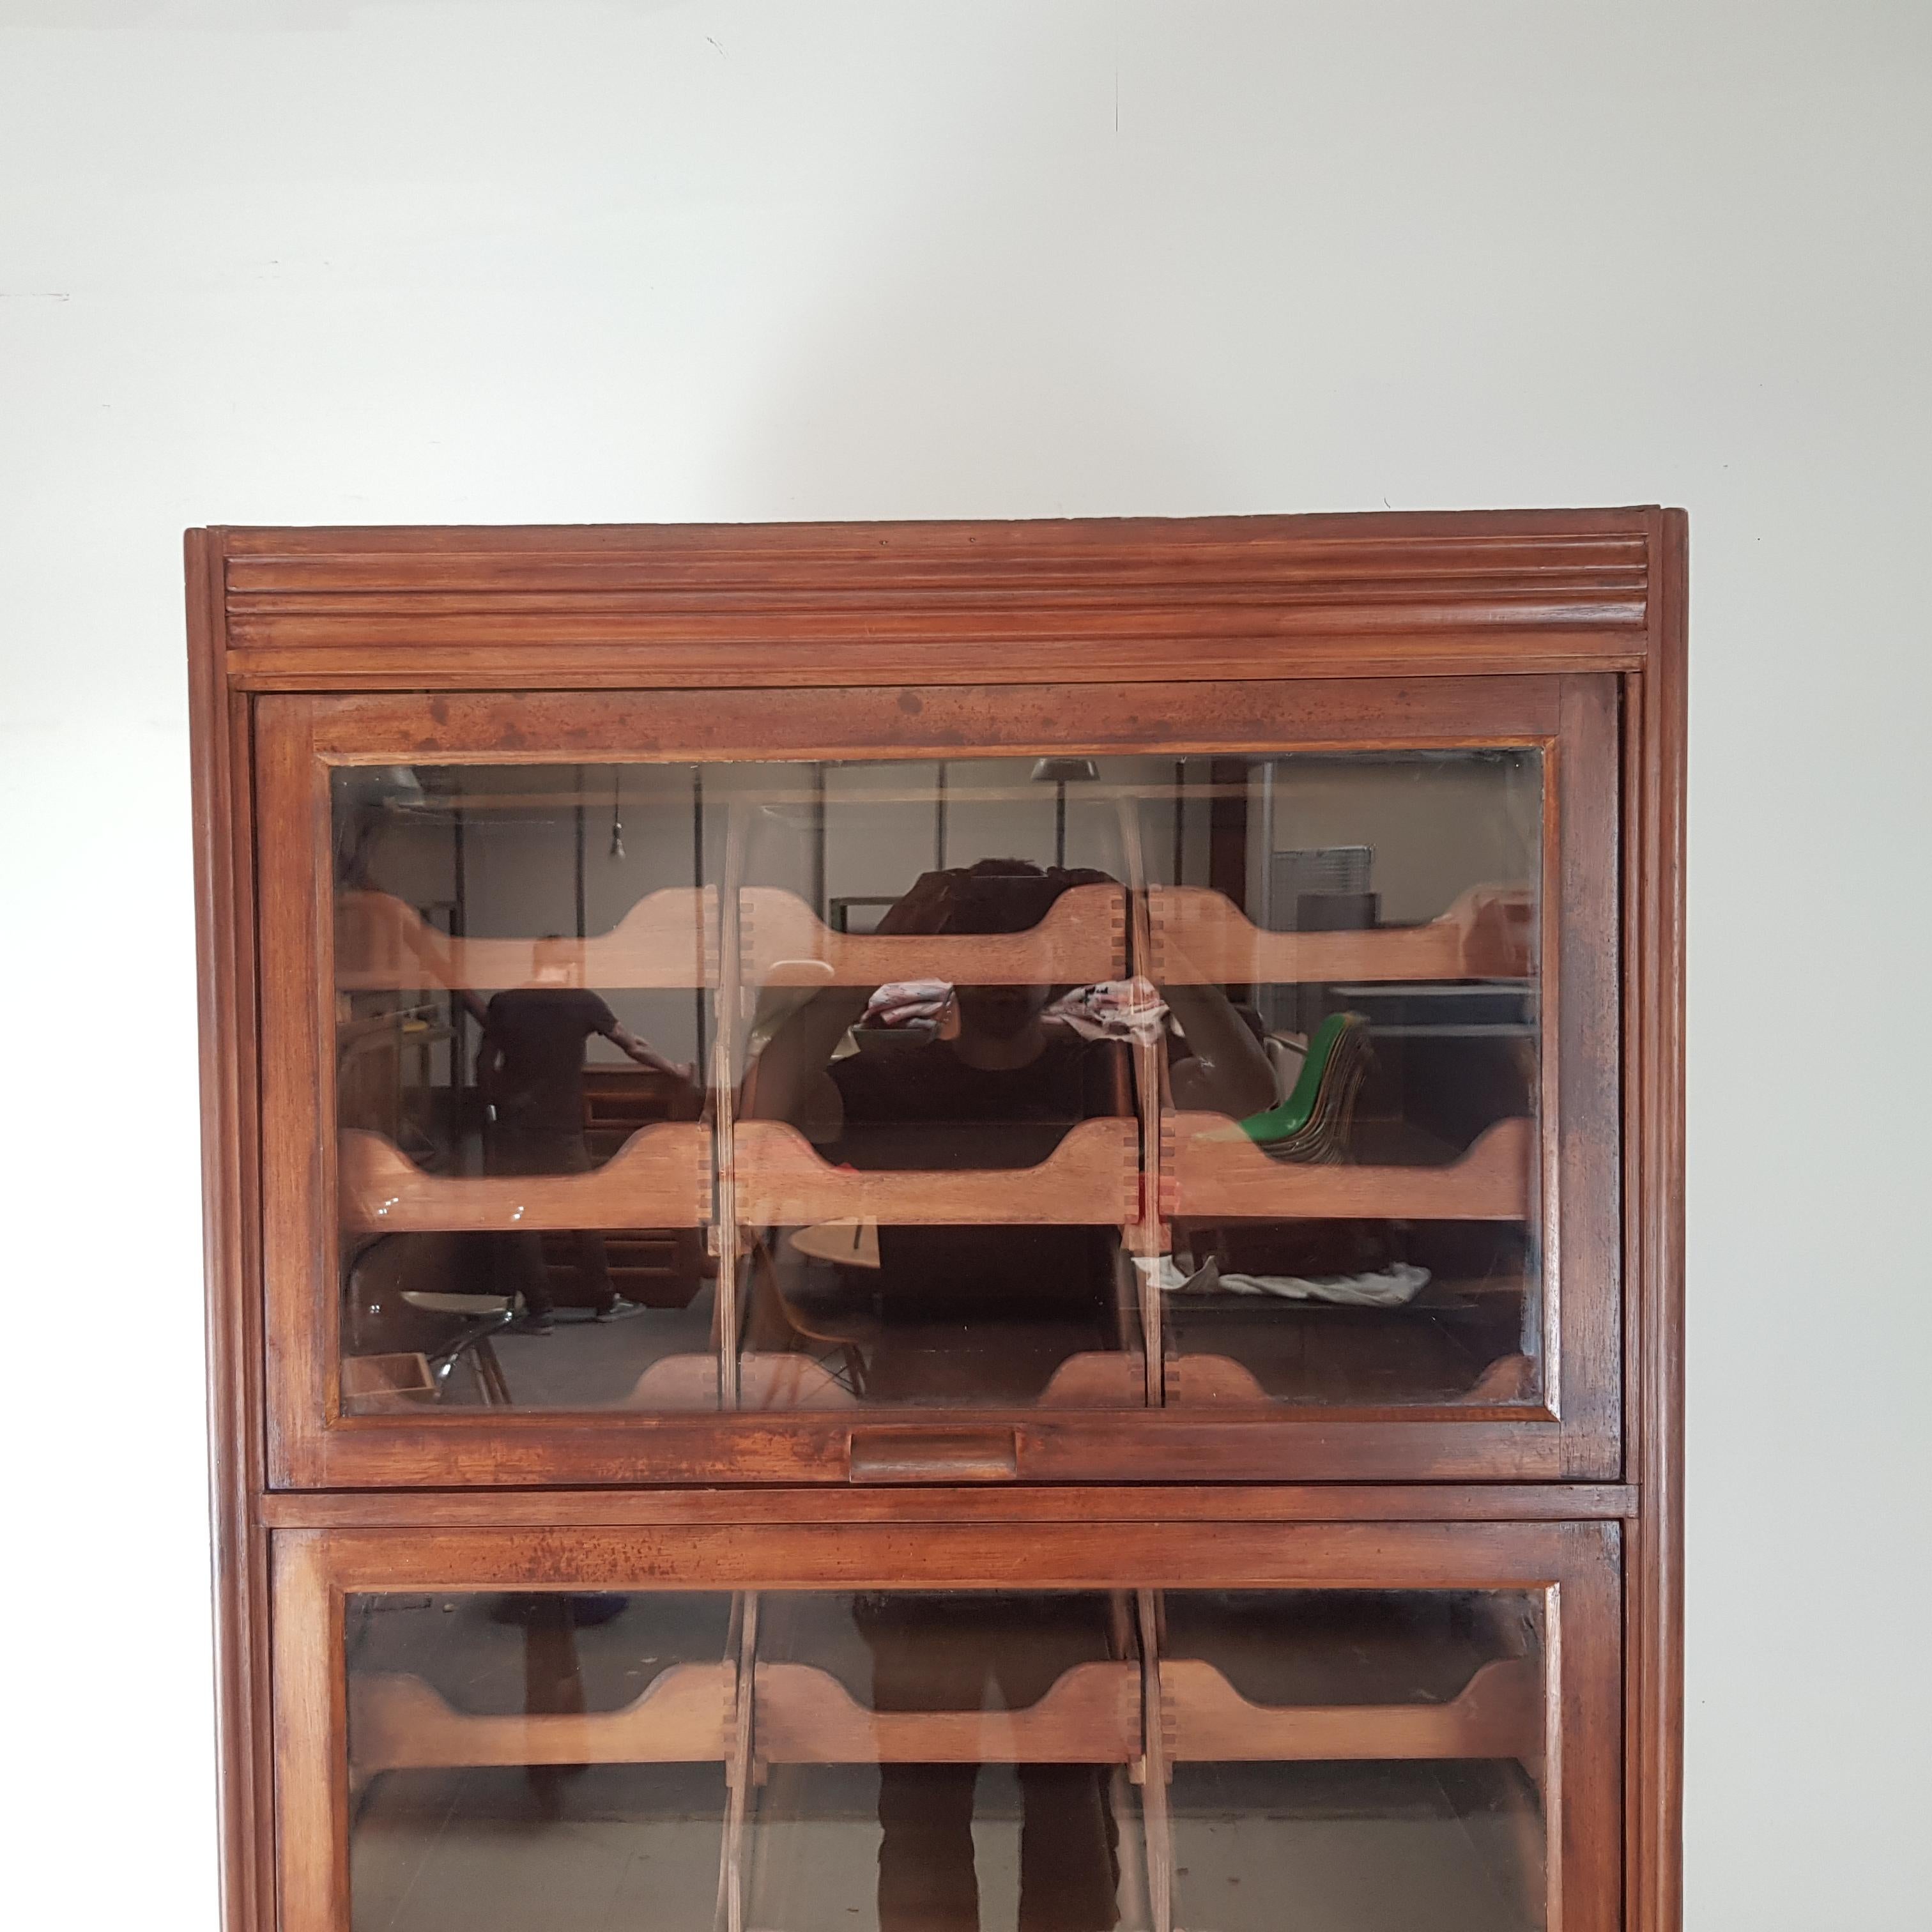 English Vintage Haberdashery Cabinet Shop Display